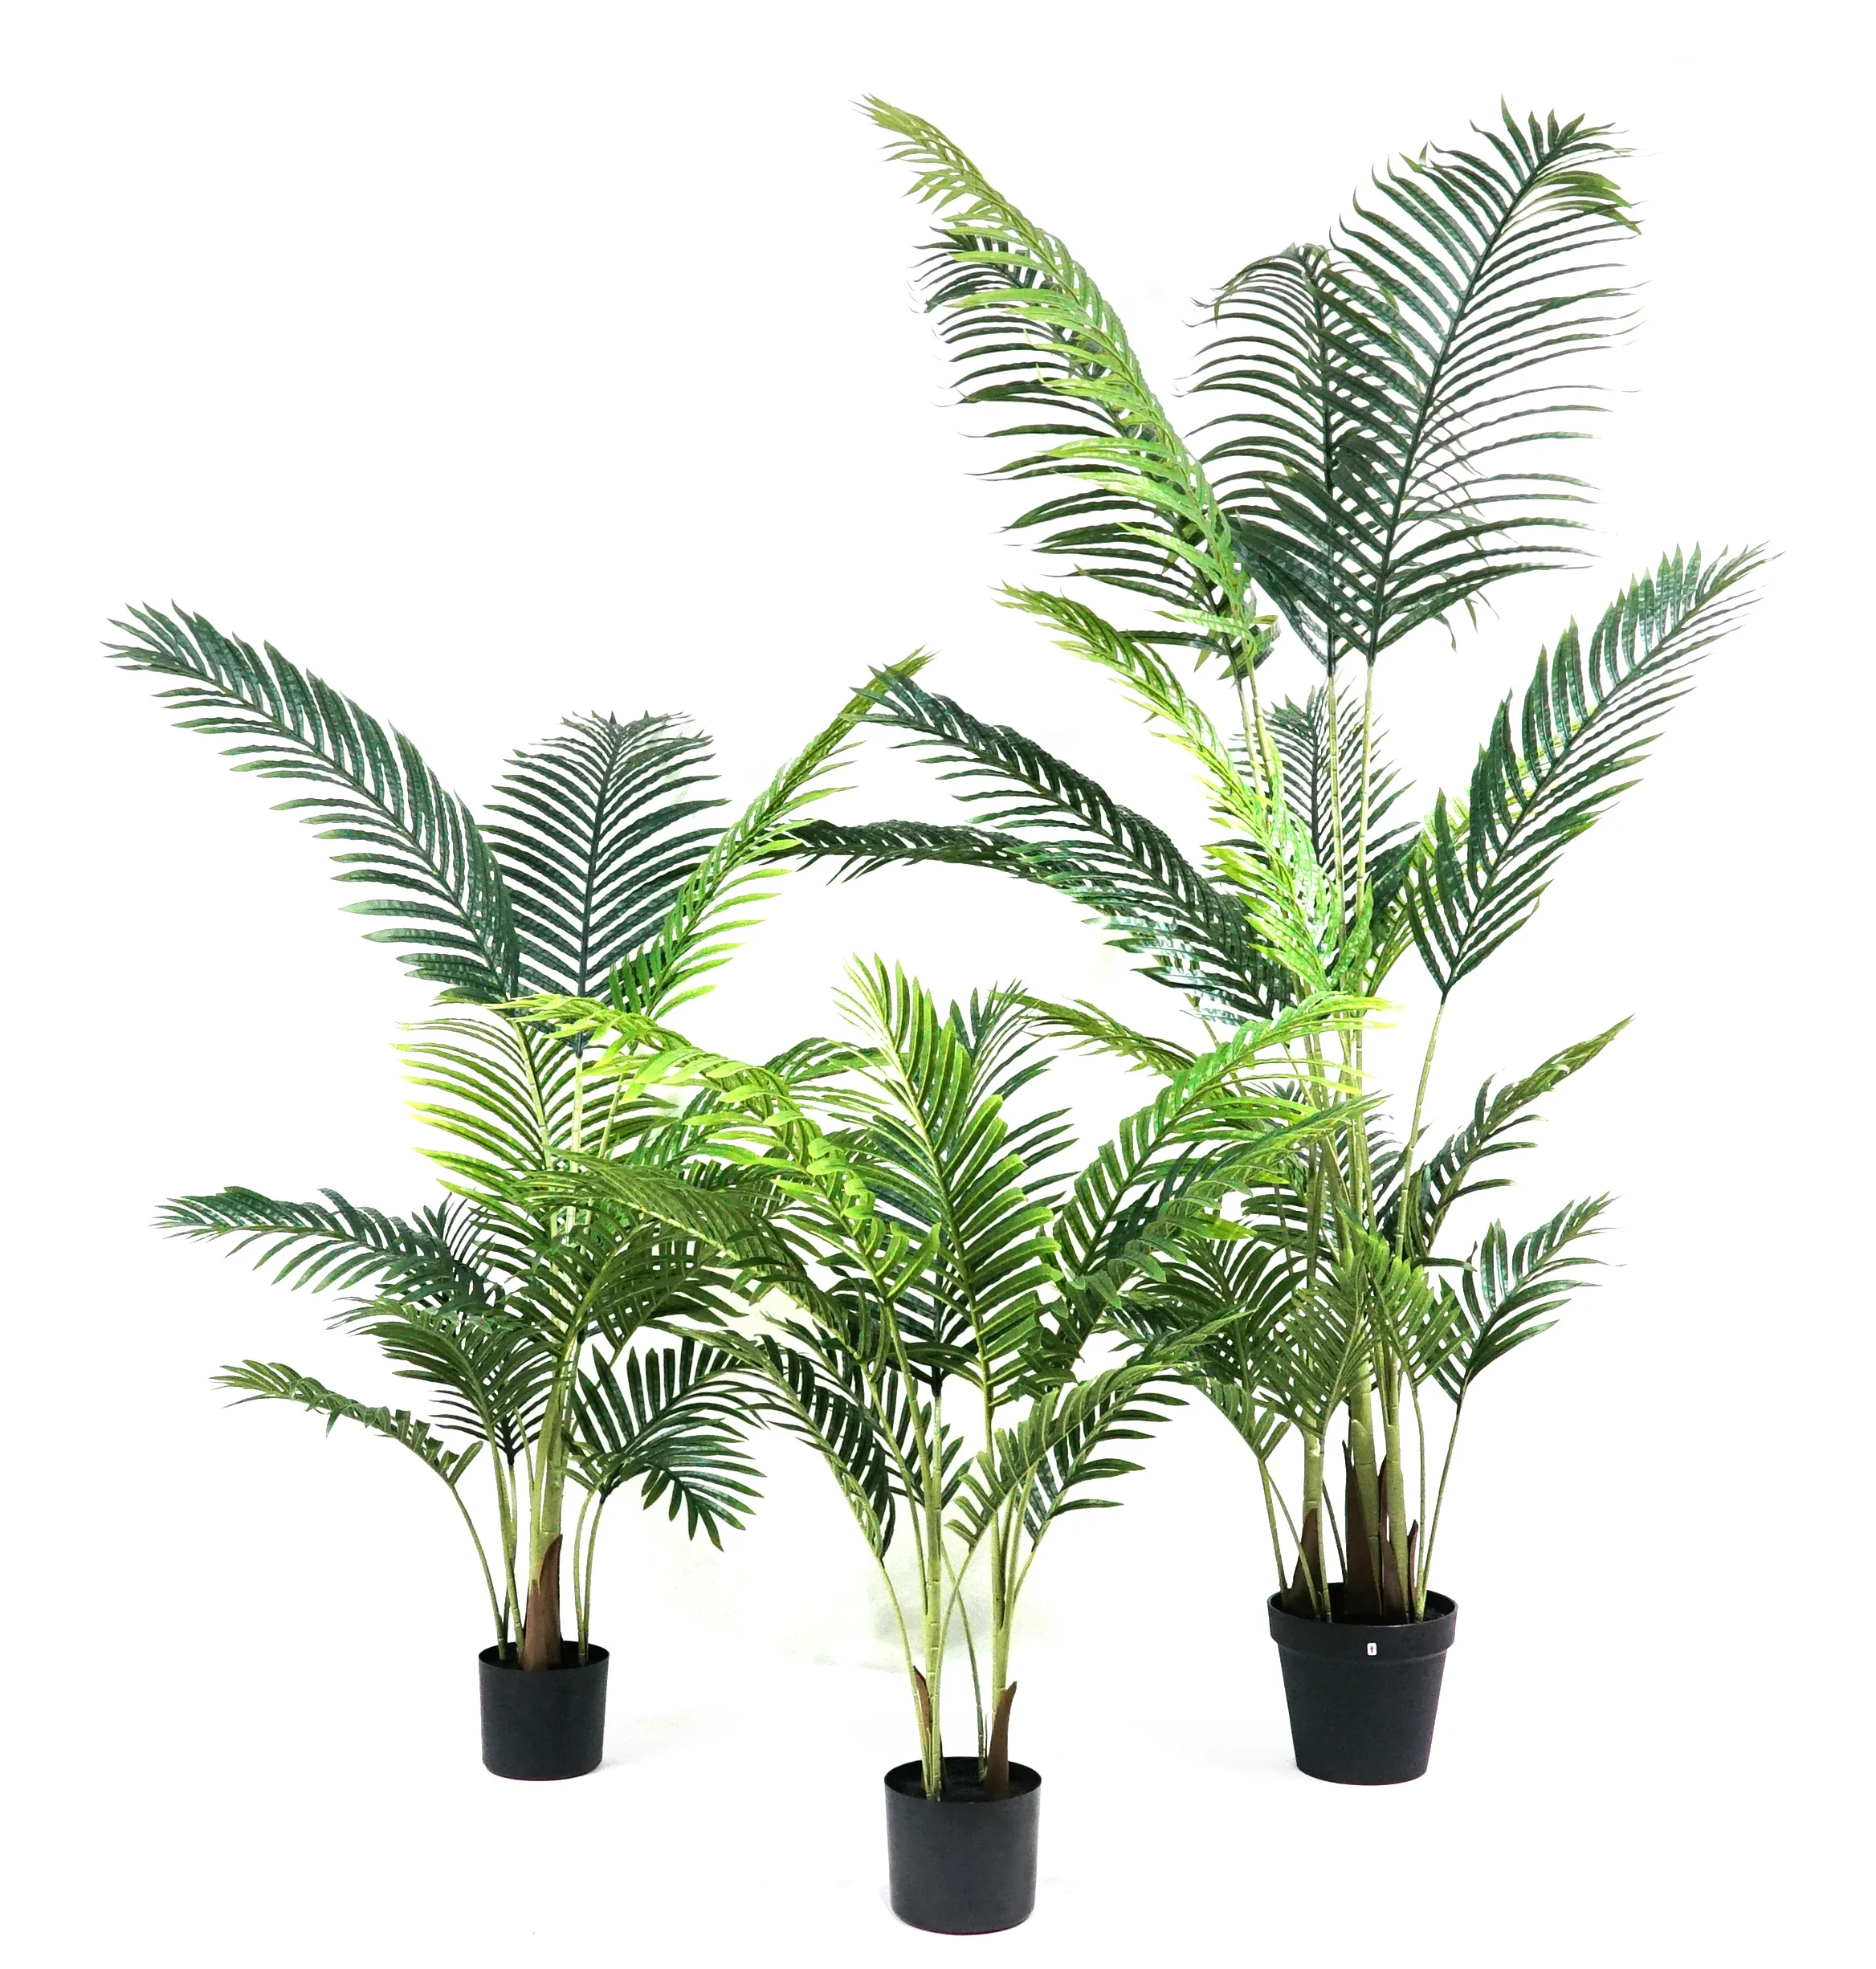 Piante artificiali albero decorazioni per la casa bonsai albero piante di plastica vasi giardino paesaggistica moderno falso planta palma da interno